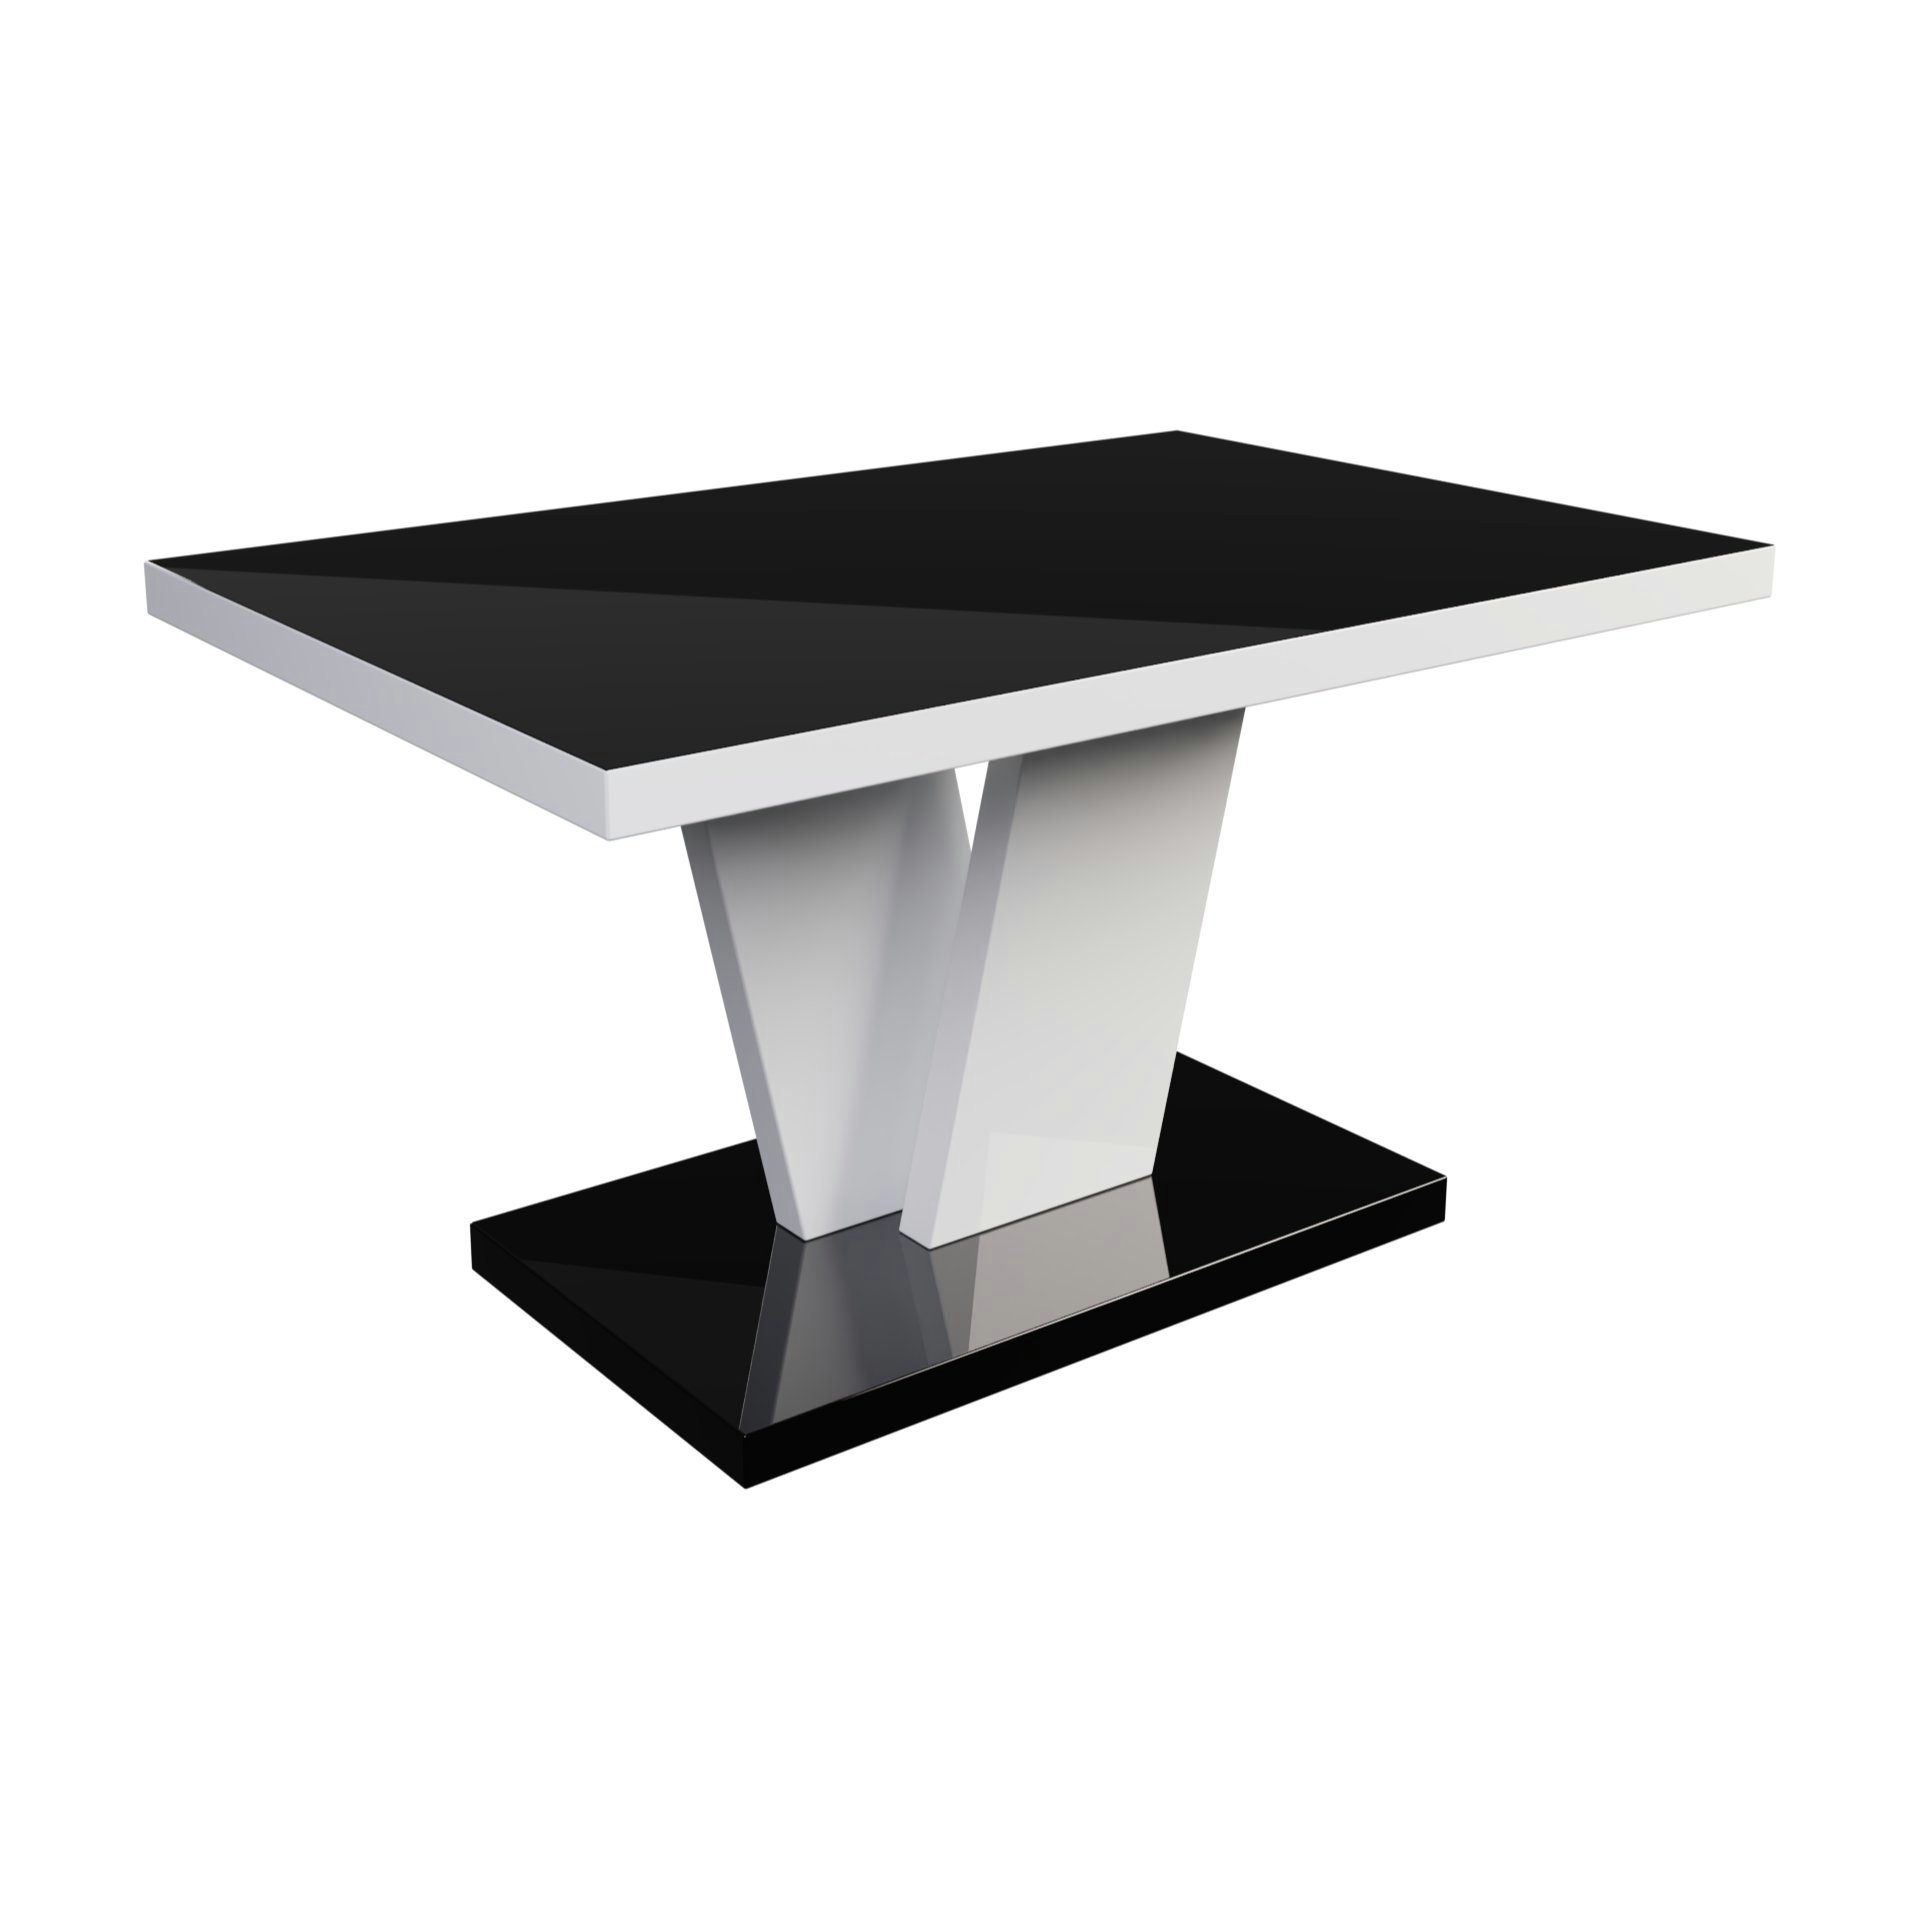 Hochglanz Tisch 90x60x50cm Hochglanz Hochglanz MA-222 Couchtisch / designimpex Couchtisch Design Schwarz Weiß